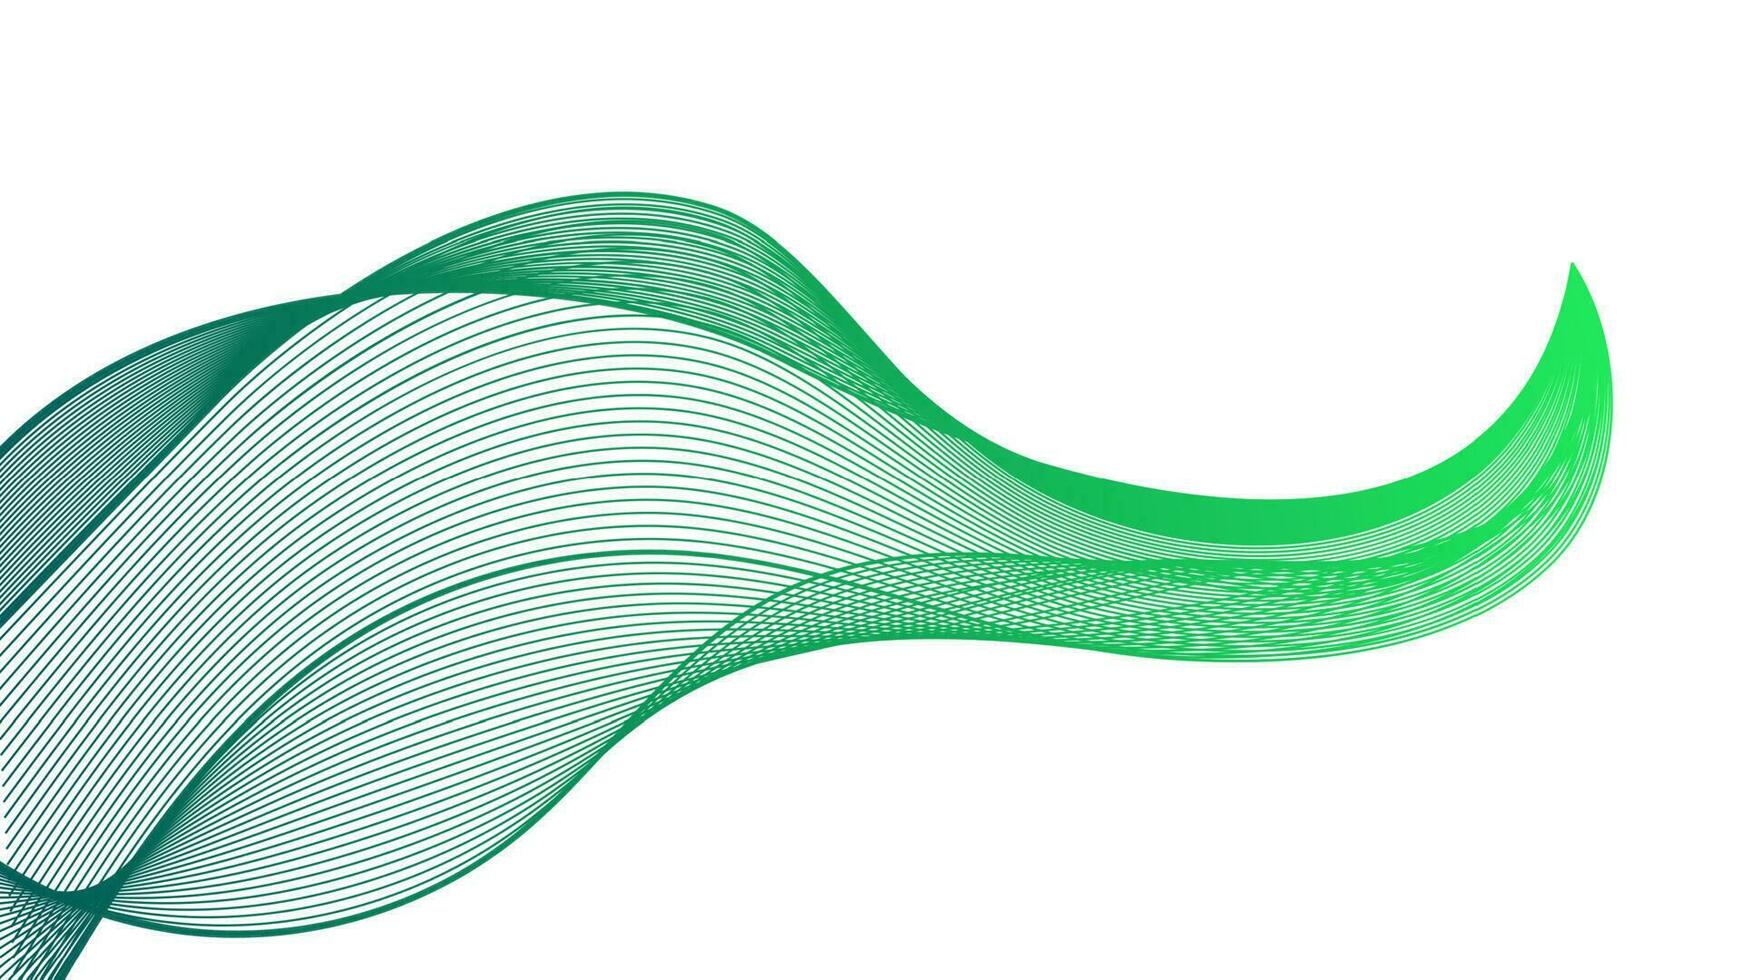 pano de fundo abstrato com linhas coloridas de gradiente de onda em fundo branco. fundo de tecnologia moderna, design de onda. ilustração vetorial vetor